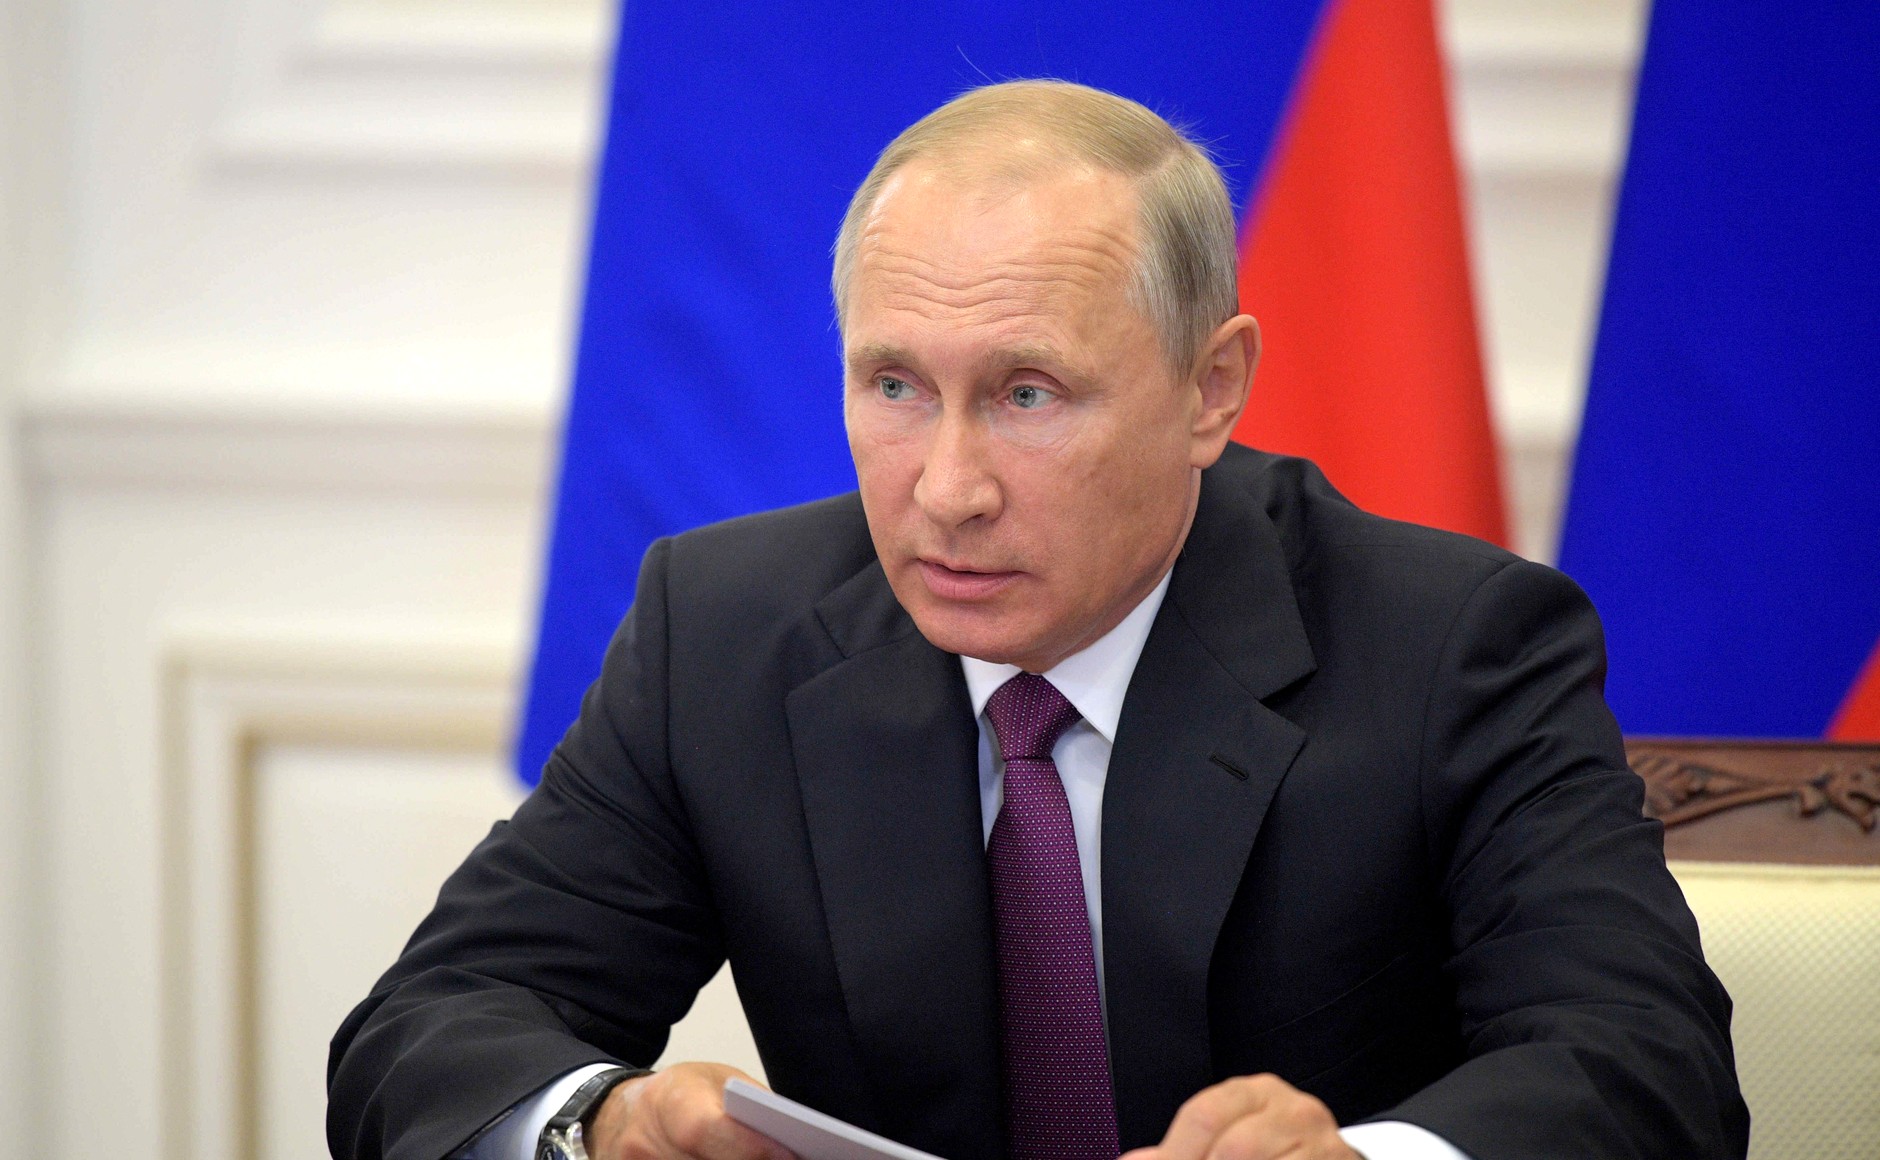 Пресс-конференция Путина 2020 состоится 17 декабря, сегодня